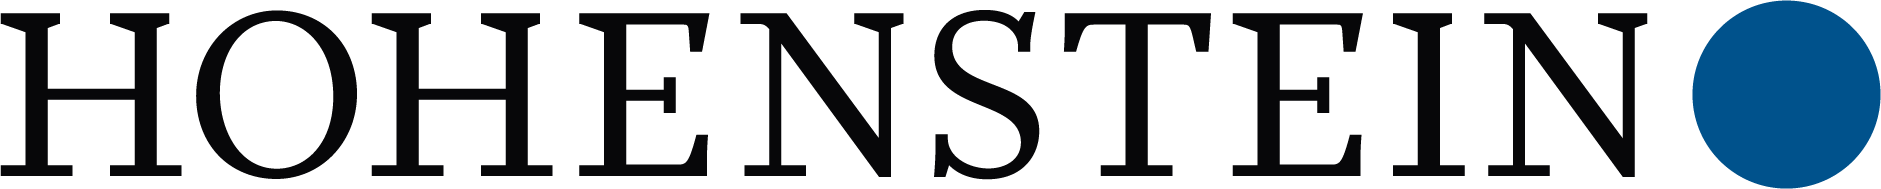 Hohenstein logo.png